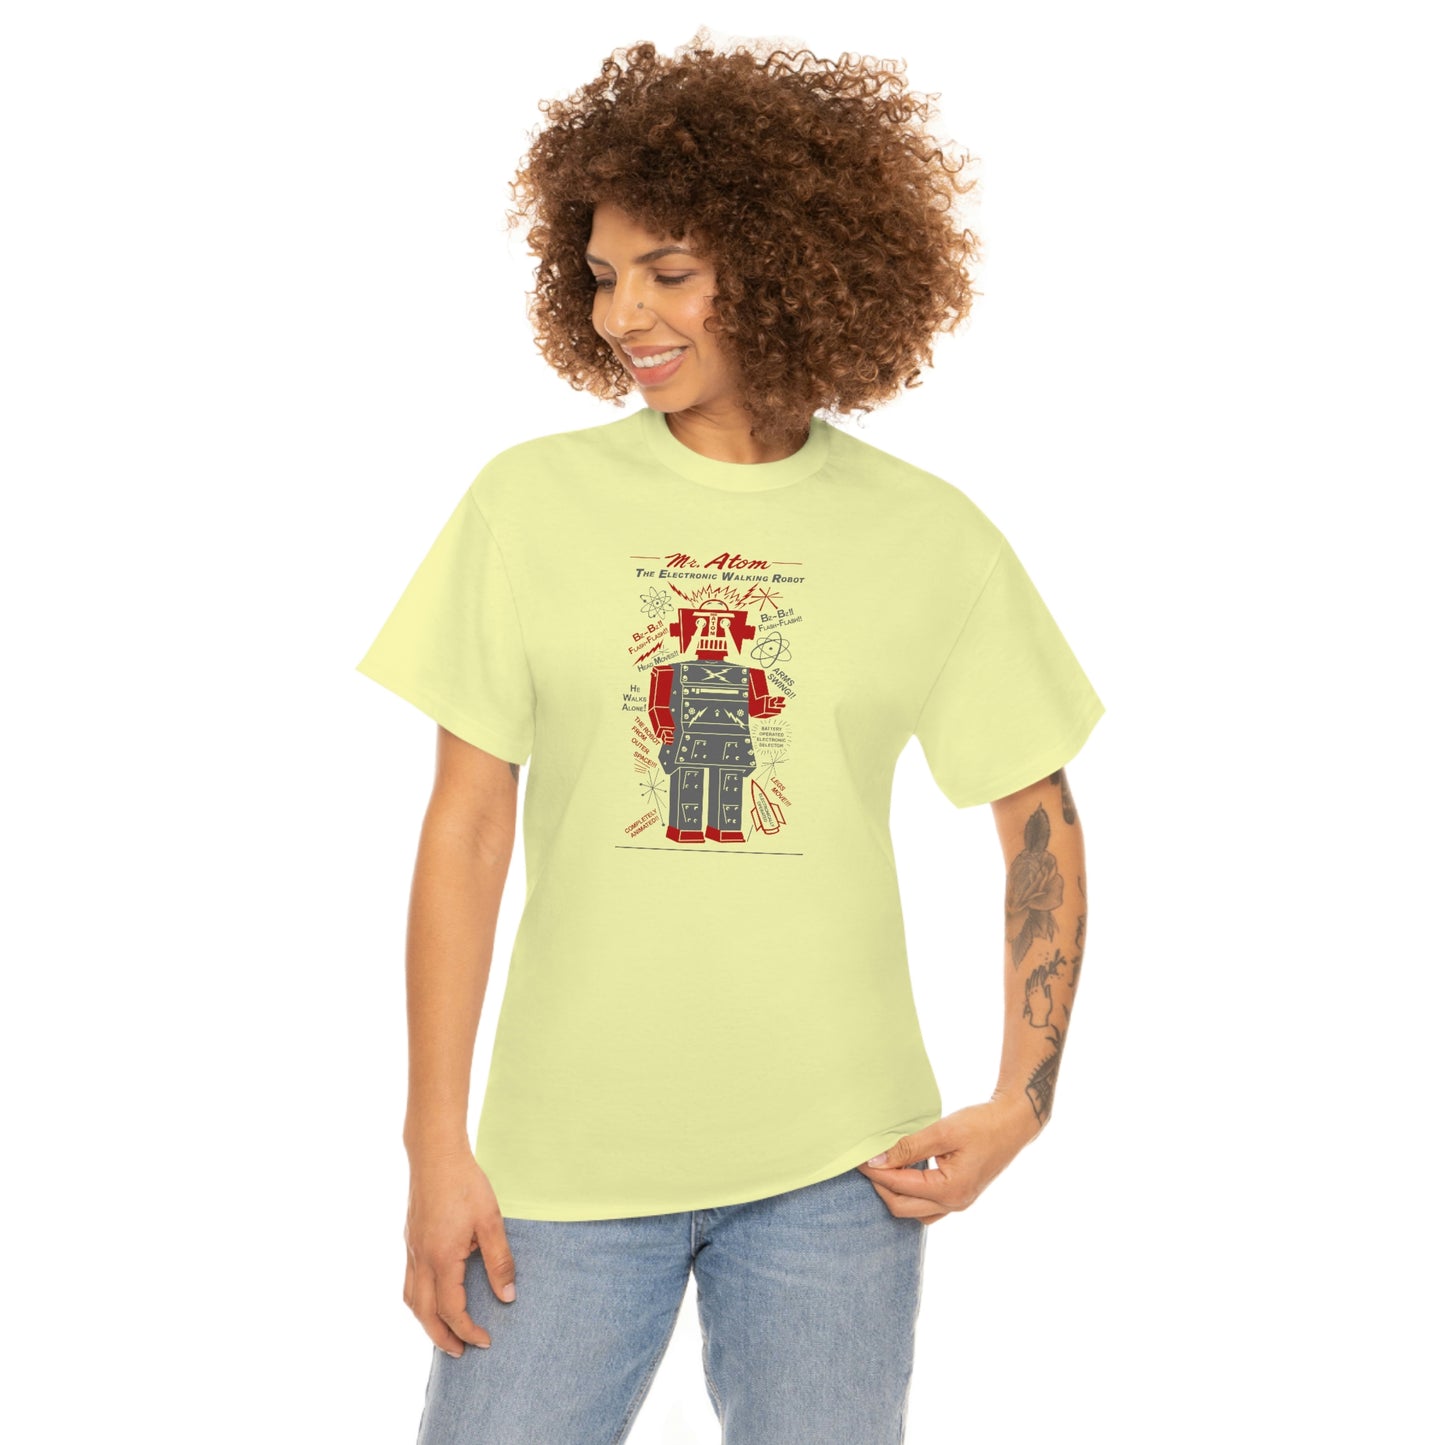 Mr. Atom Robot T-Shirt